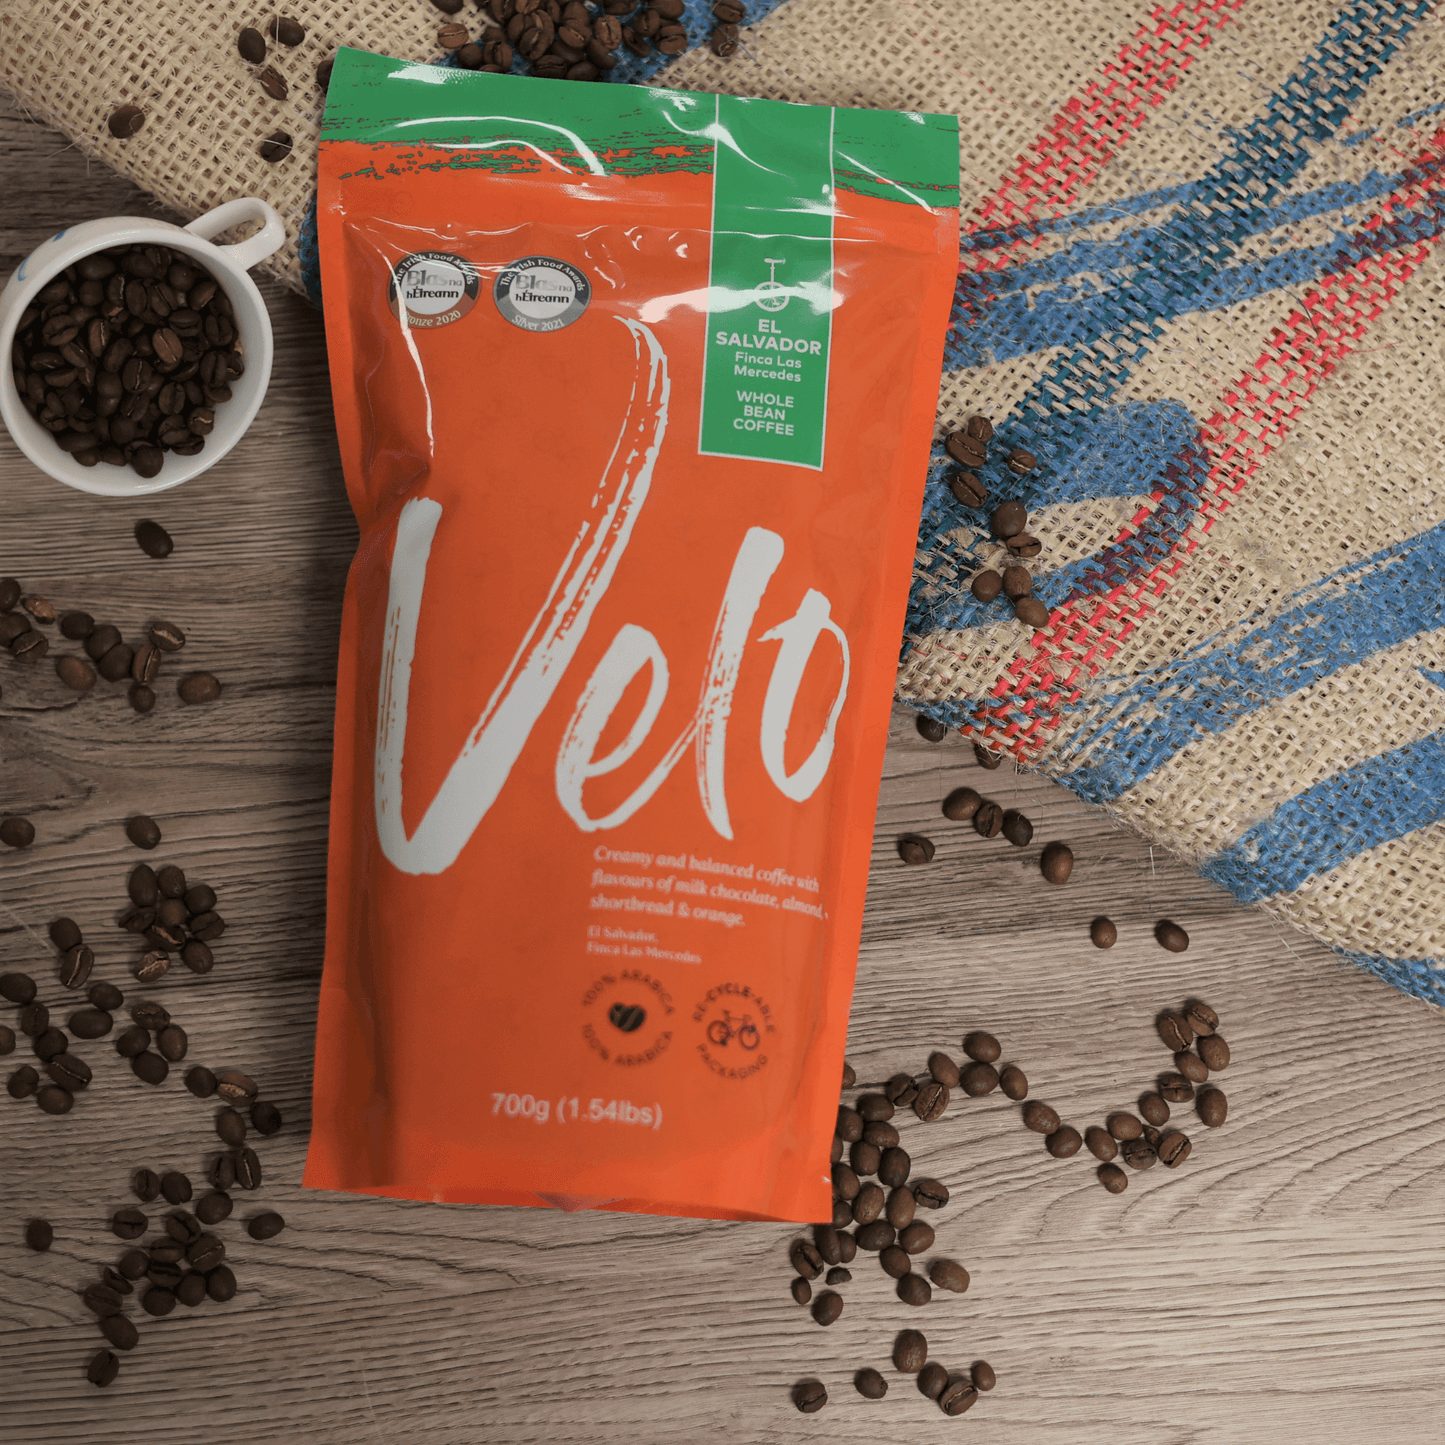 Finca Las Mercedes 700G Coffee Bag El Salvador - 6 Months Pre-Paid Subscription - Velo Coffee Roasters